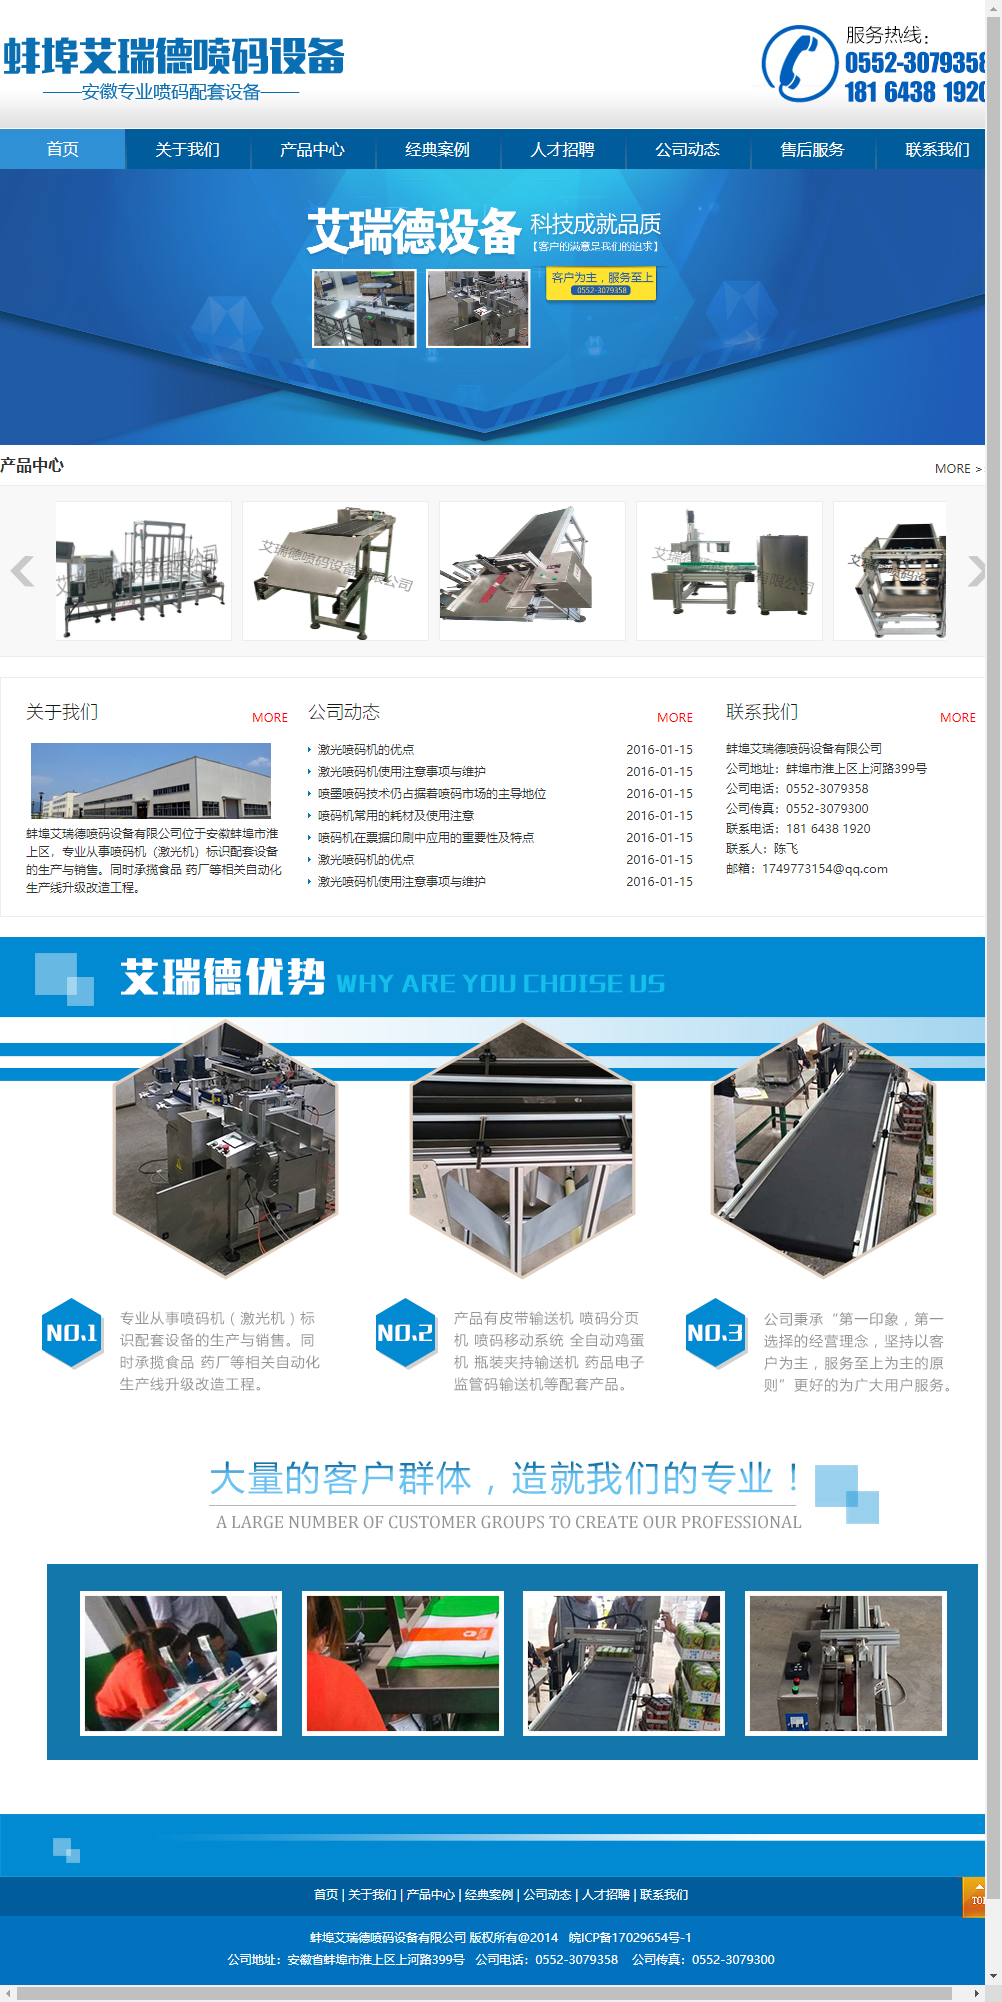 蚌埠市艾瑞德喷码设备有限公司网站案例